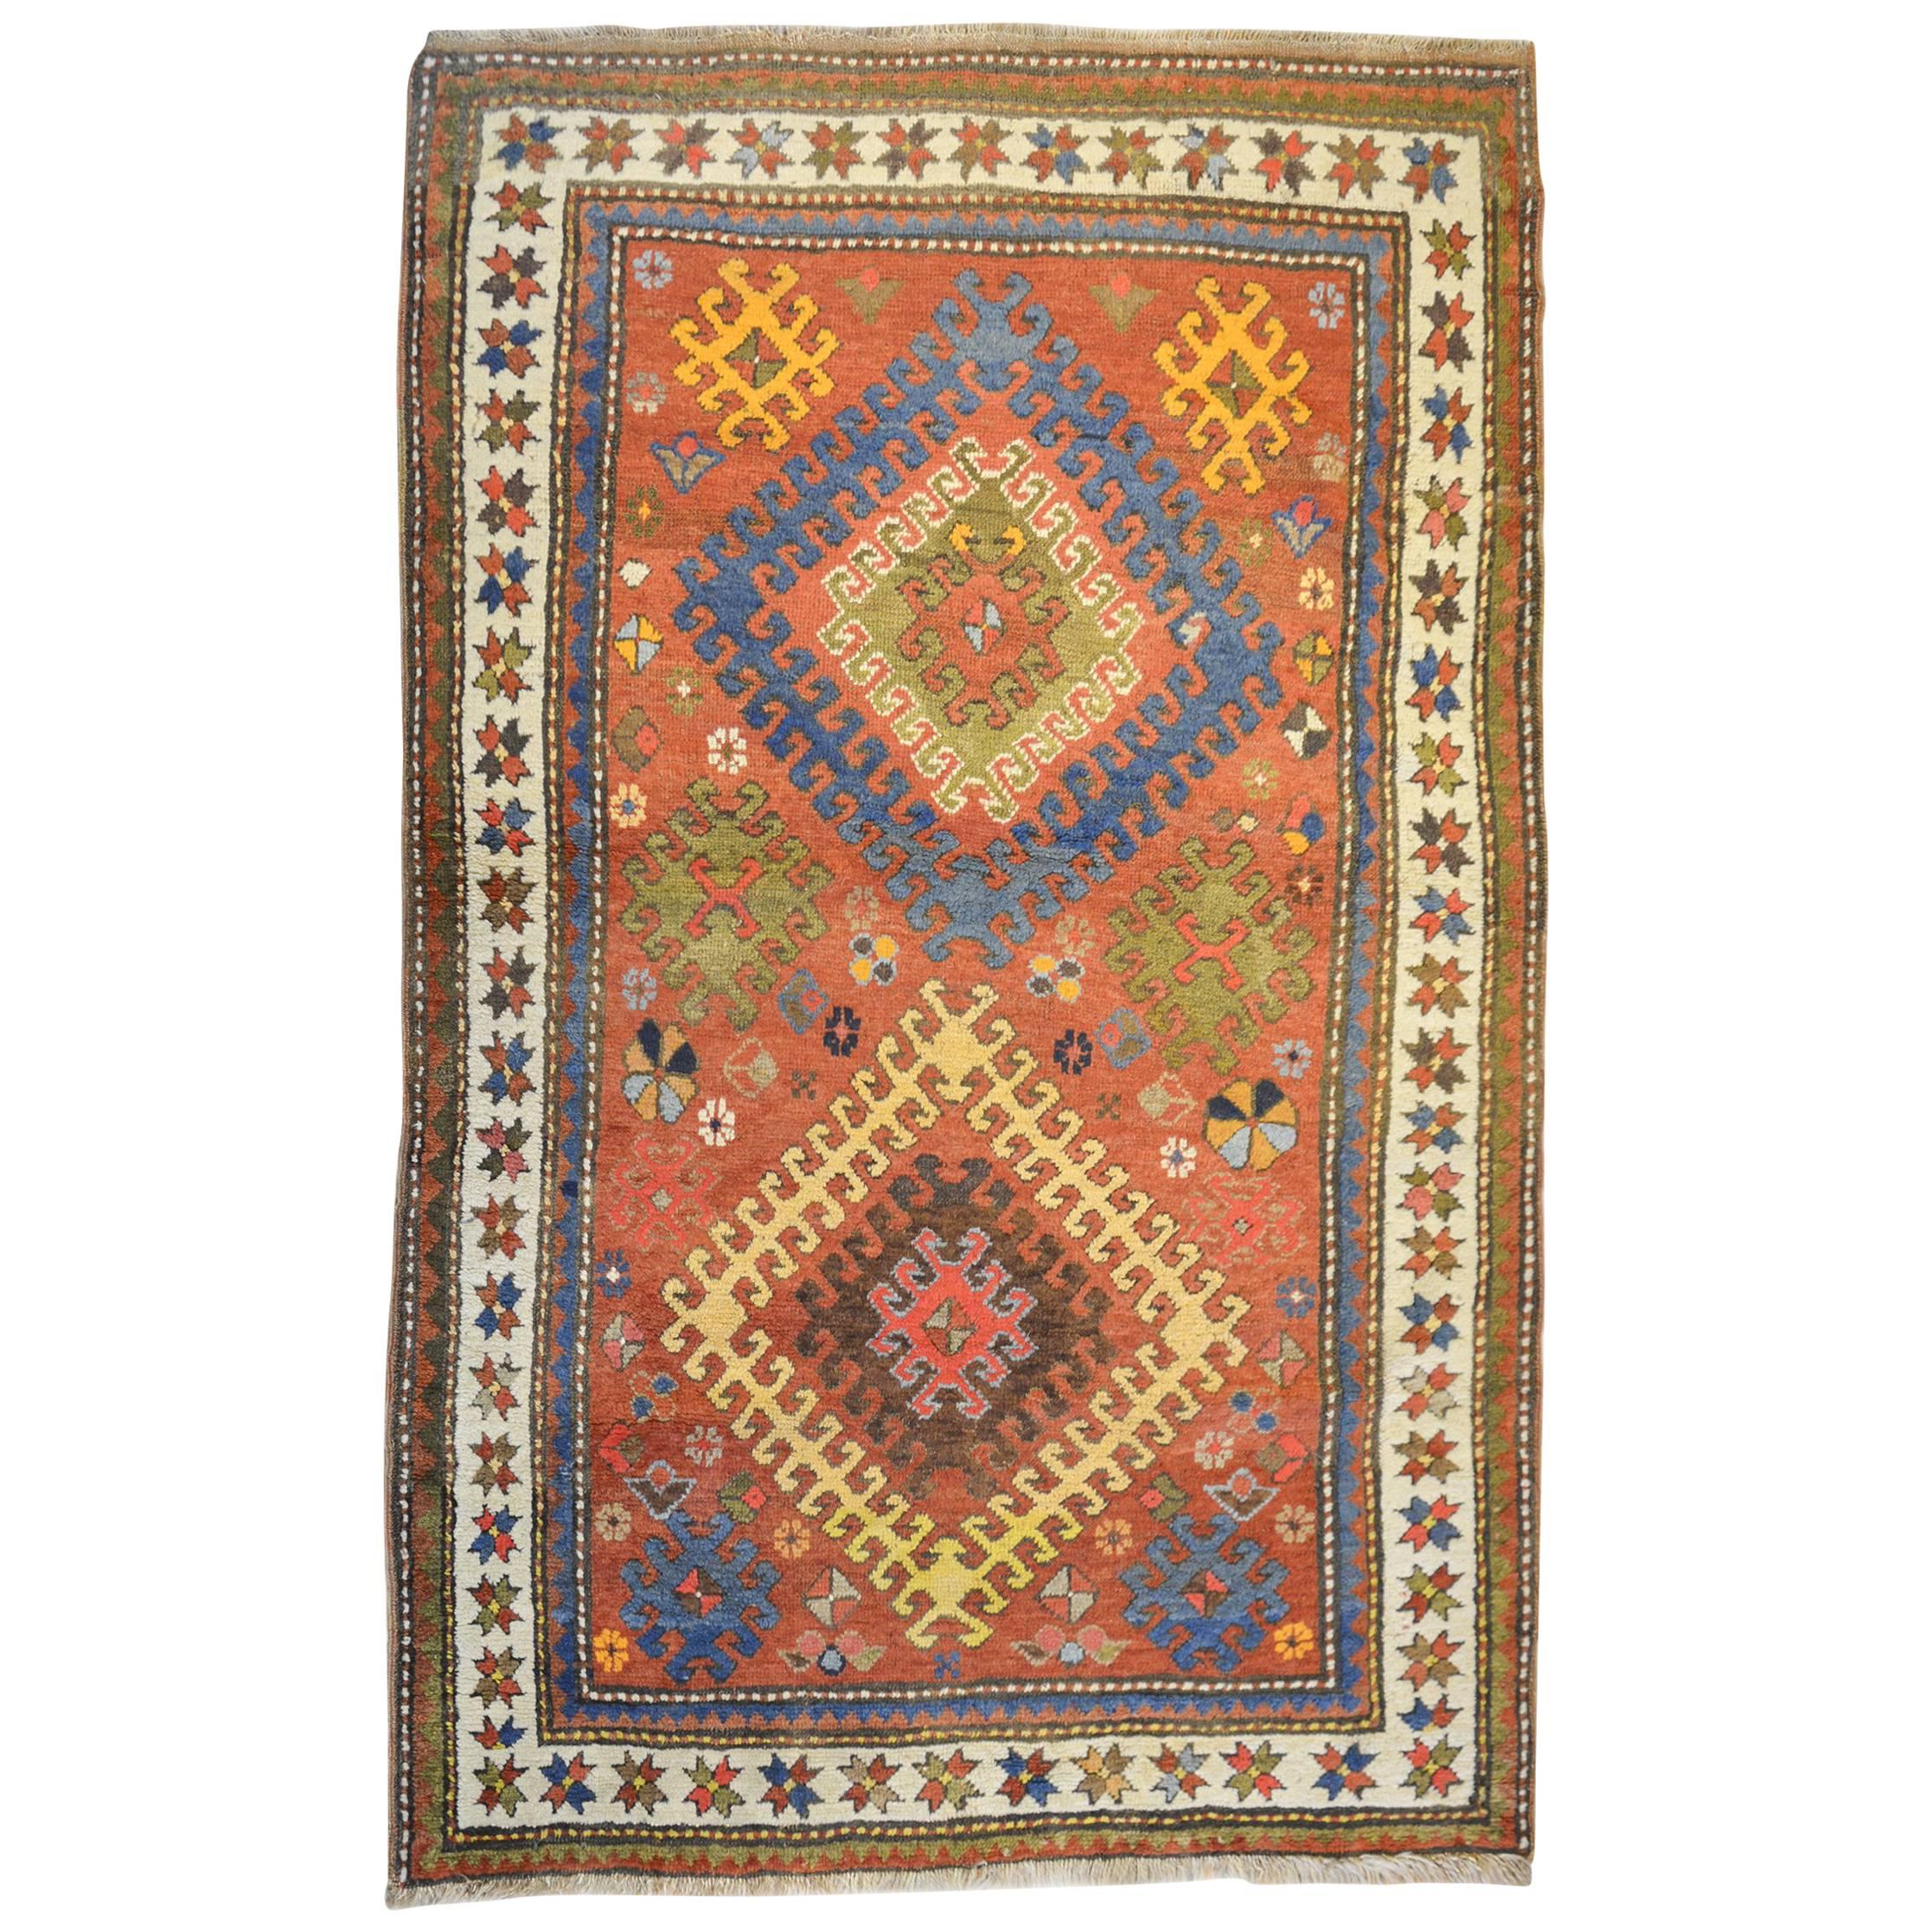 Unglaublicher kaukasischer Teppich aus dem frühen 20. Jahrhundert